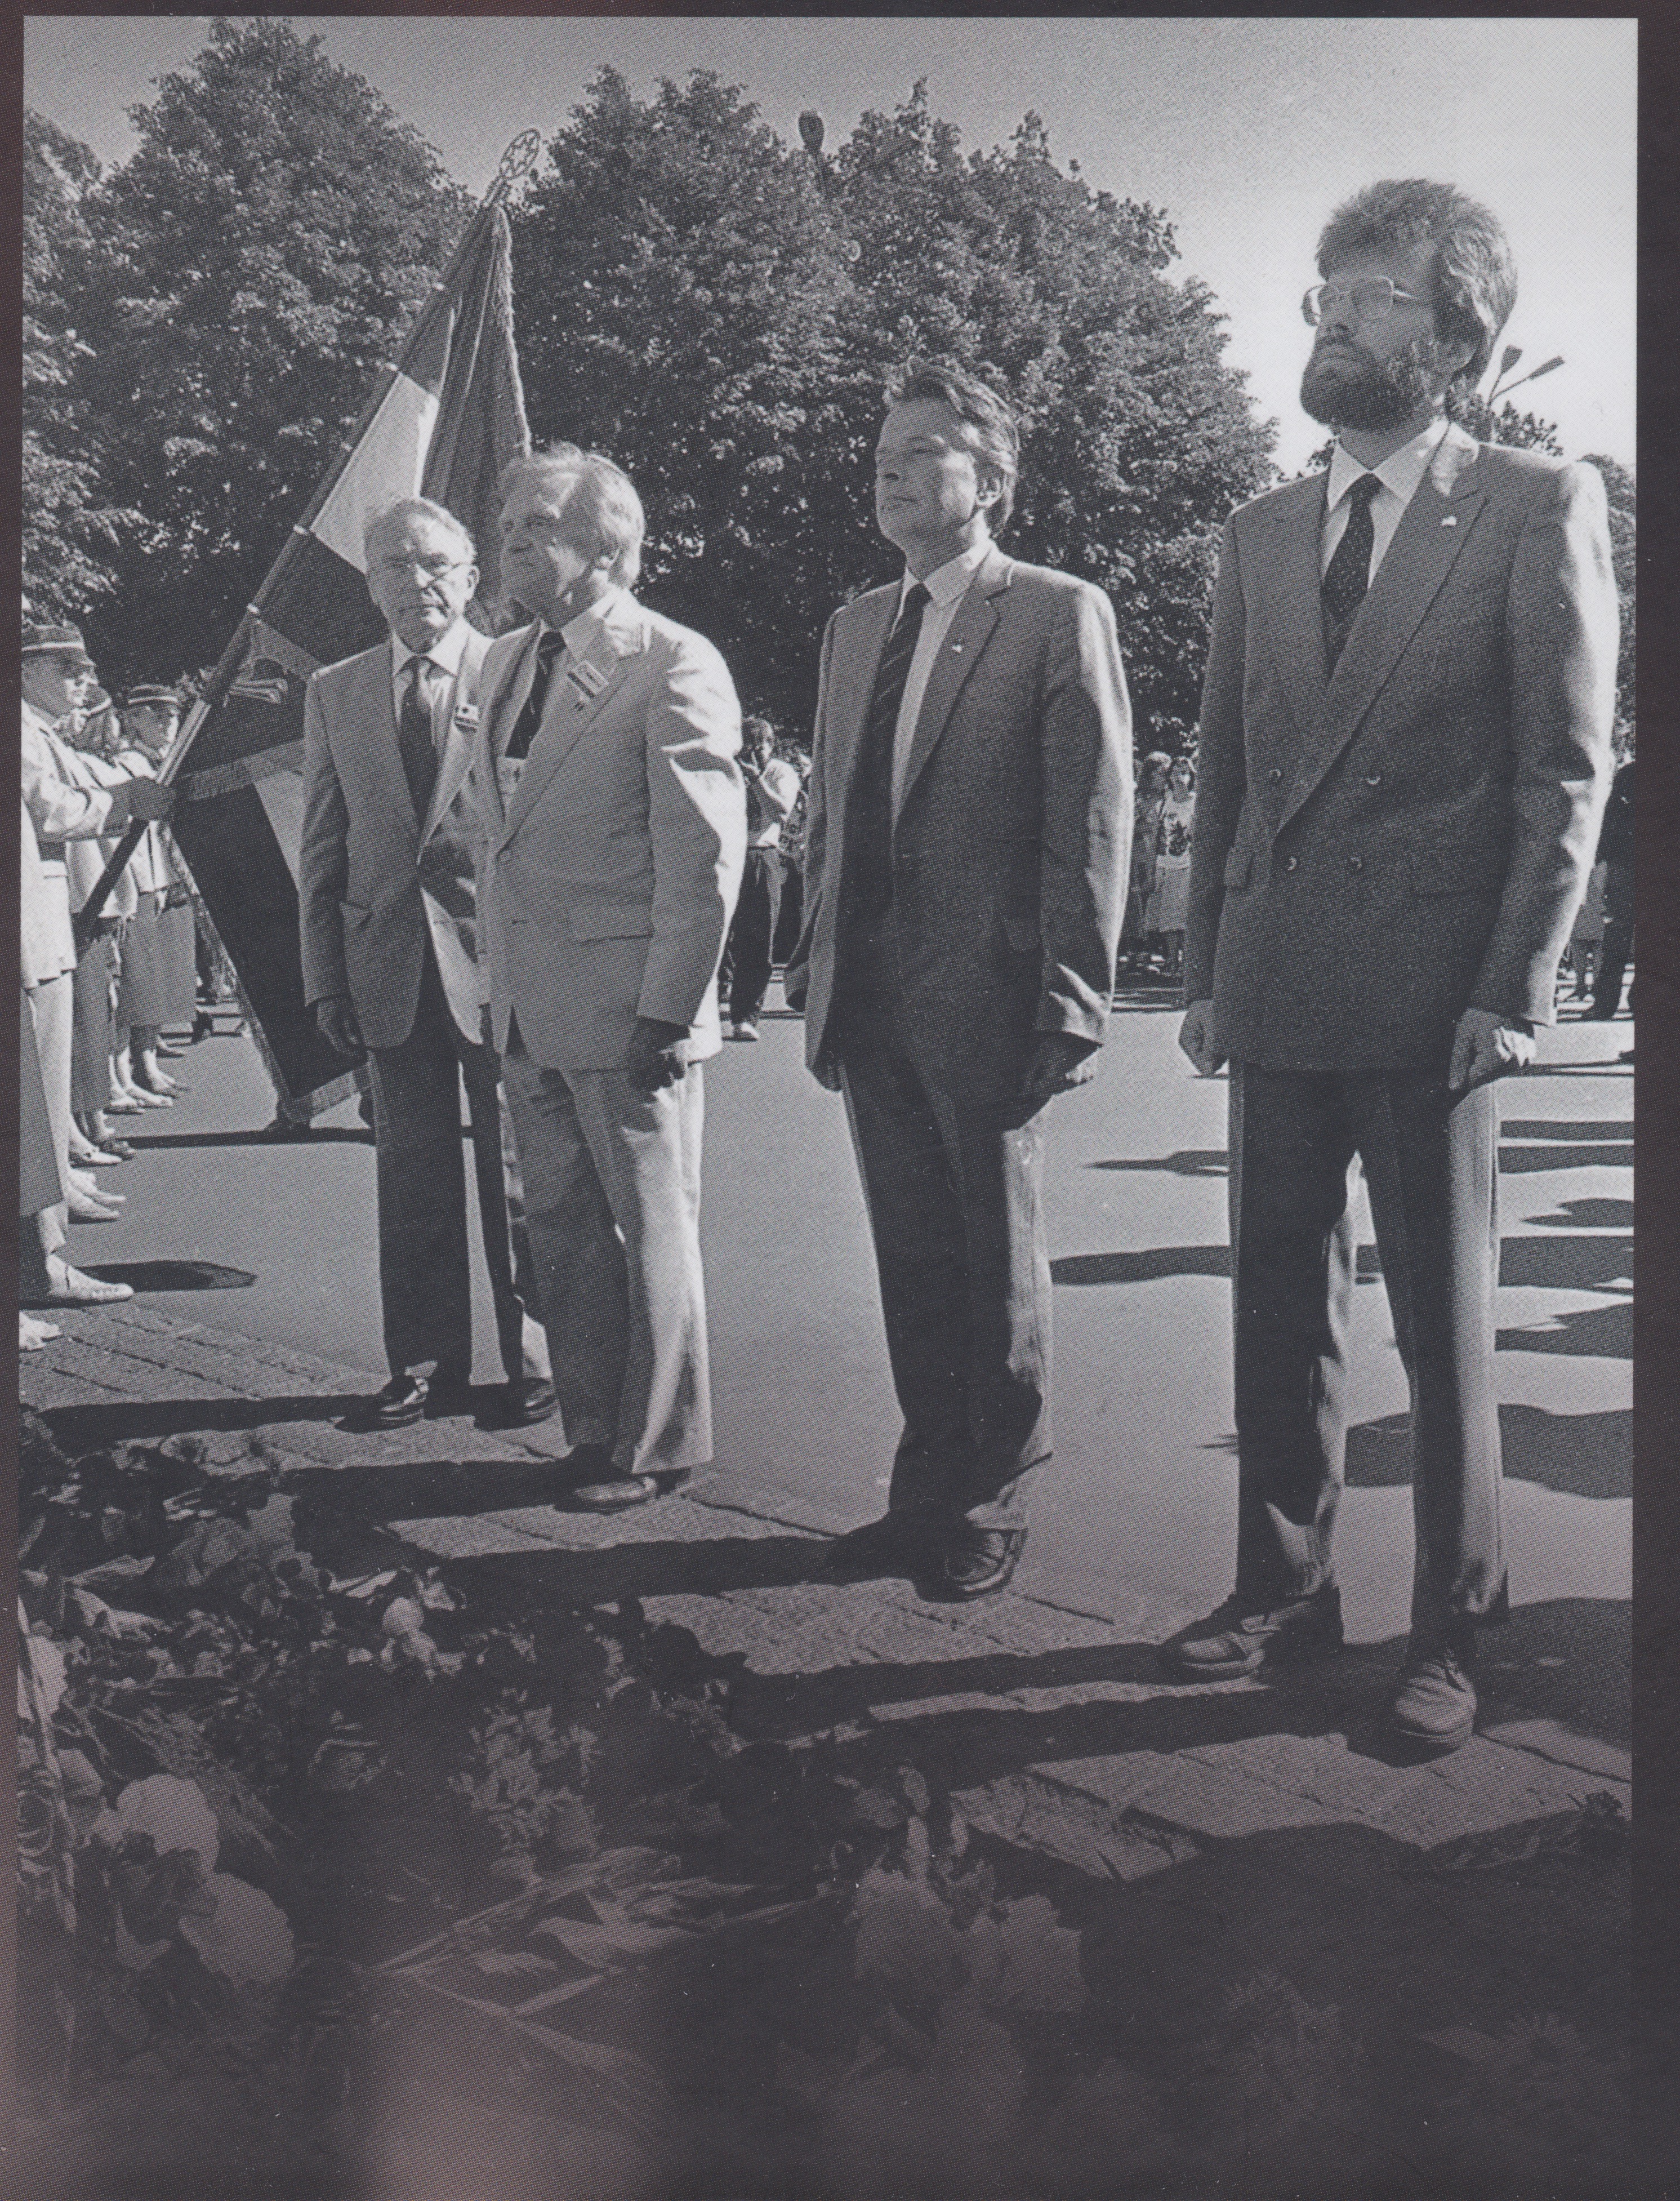 Pie Brīvības pieminekļa ziedus liek LĀZA vadītāji Arveds Alksnis un Pauls Grūbe (ASV) un LĀB veidotāji Ilmārs Lazovskis un Ivars Krastiņš, 1989. gada 18. jūnijs. Aivara Liepiņa foto.